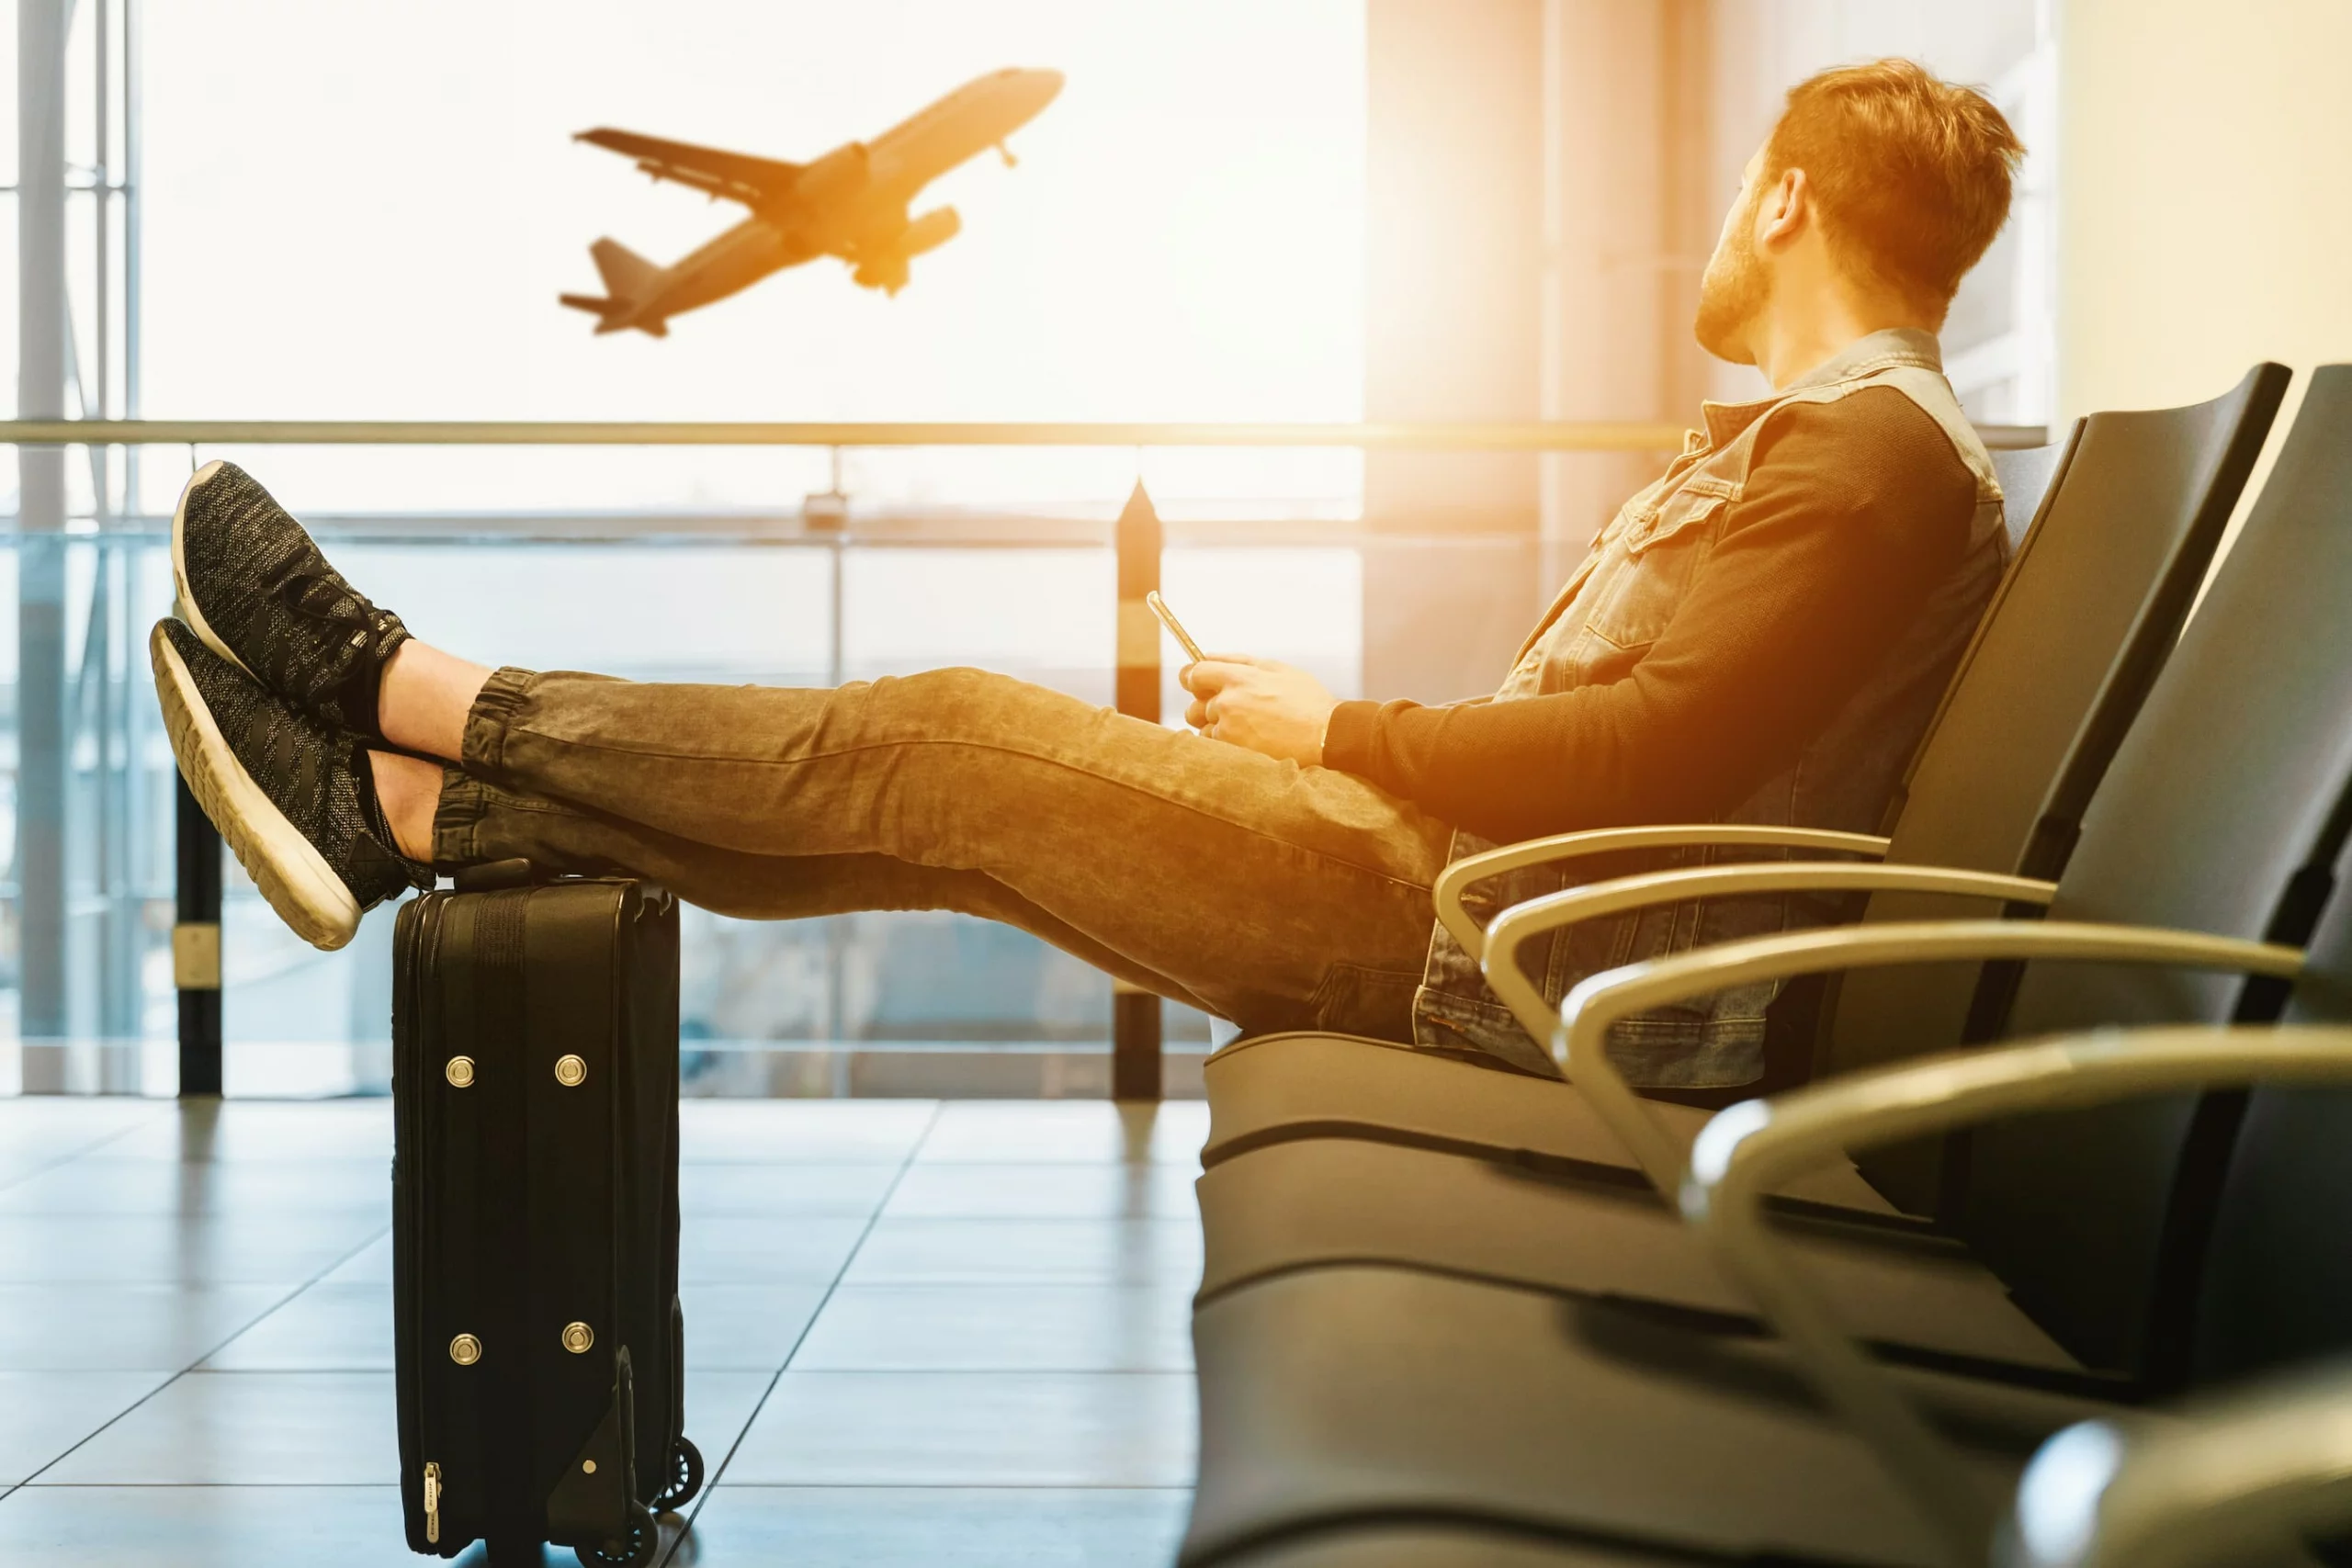 Homem sentado no saguão de um aeroporto vê um avião decolar. Imagem disponível em Unsplash.